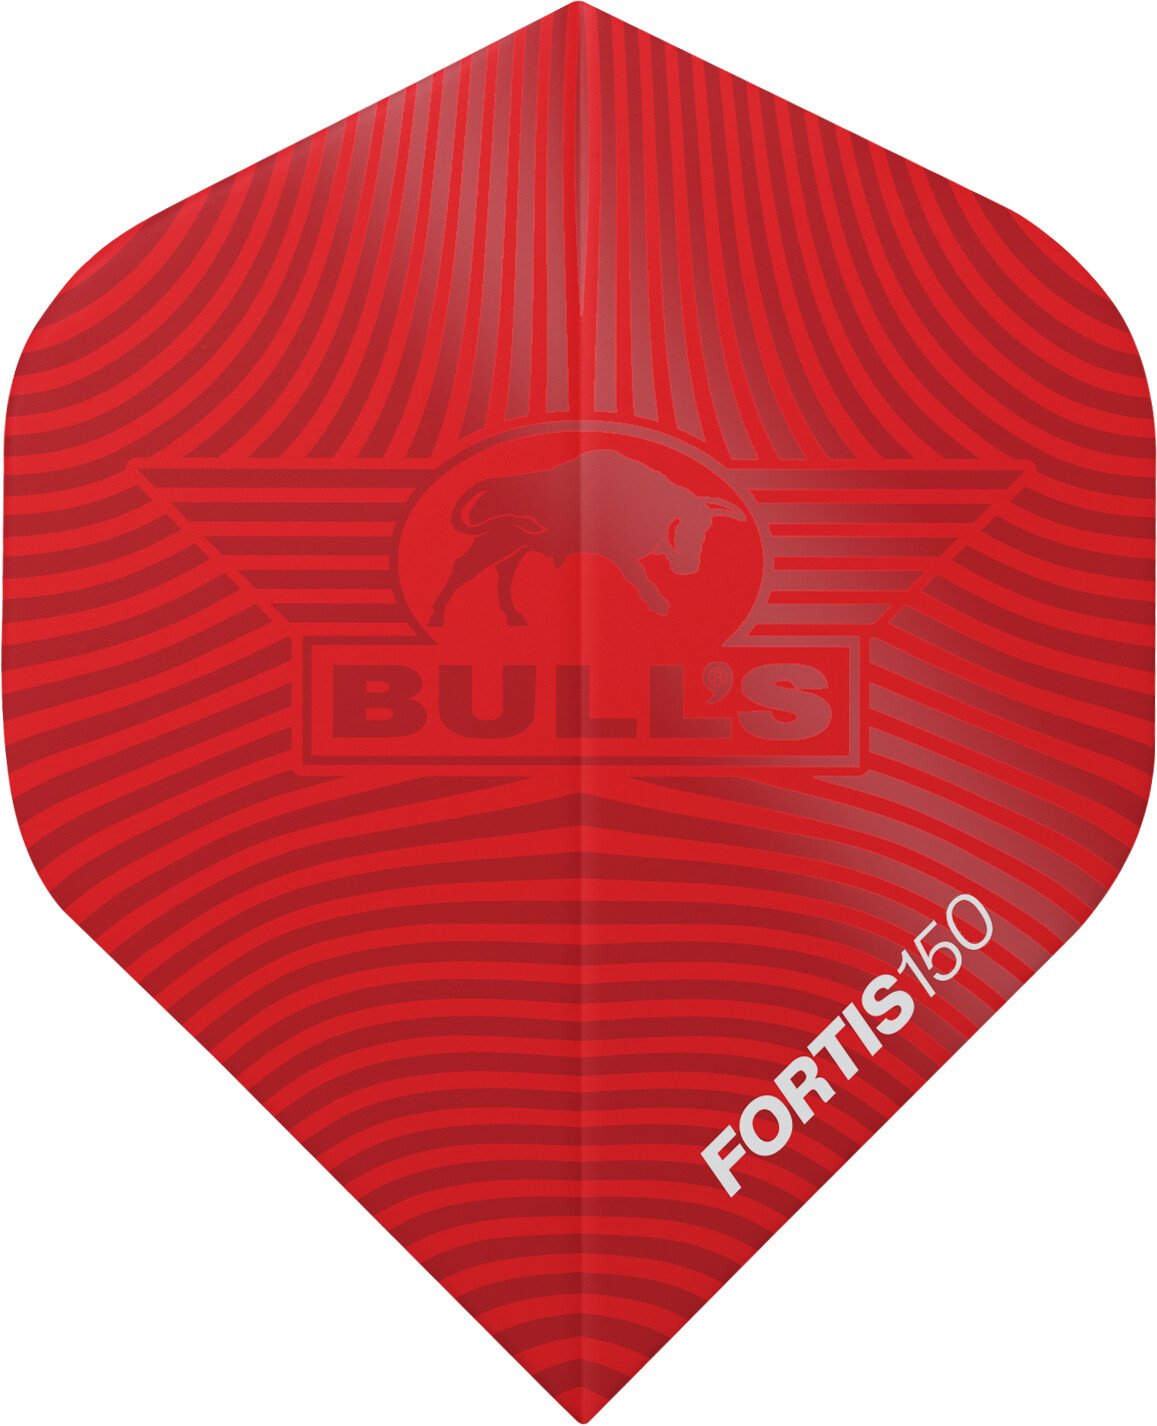 Bull's Fortis 150 Std. Red